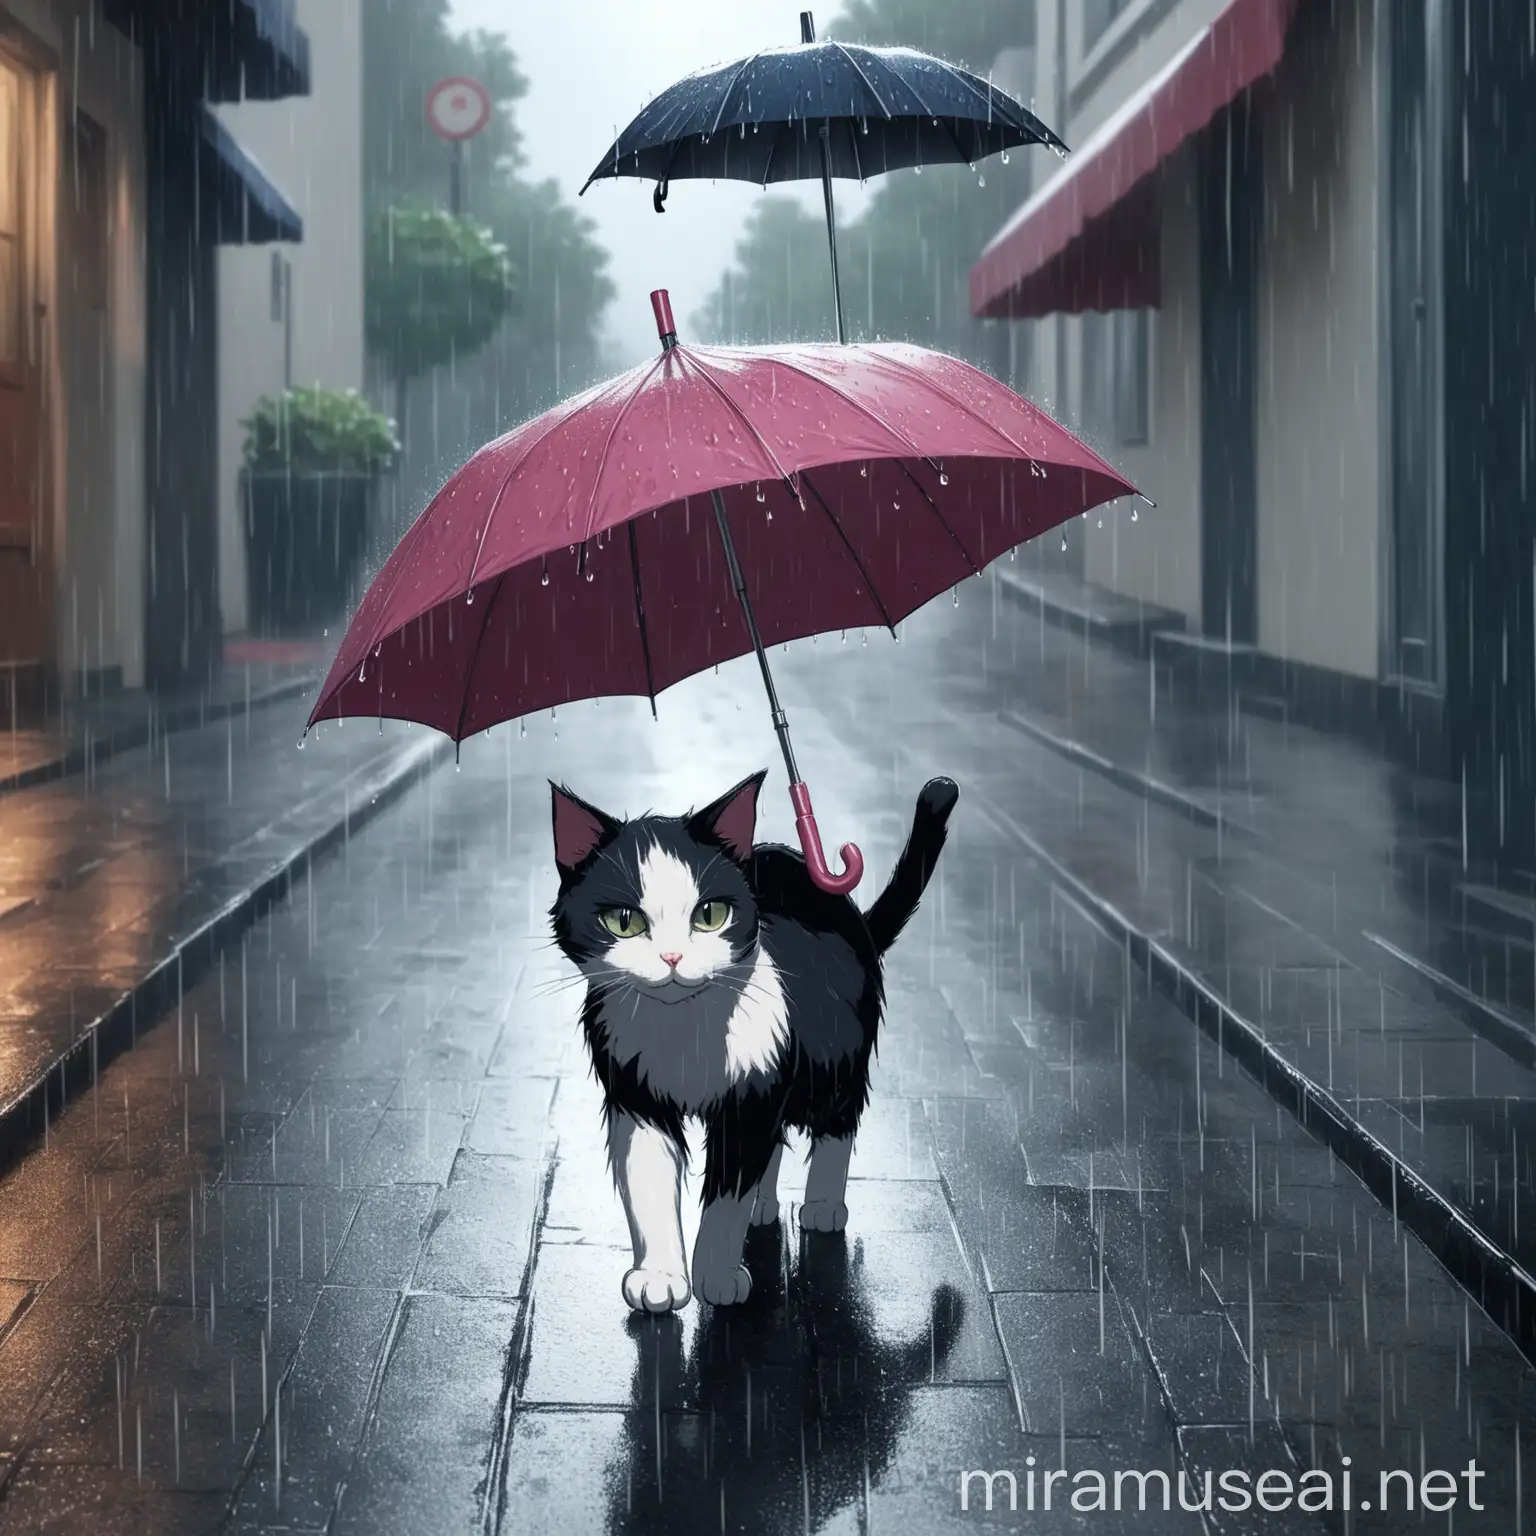 یک گربه تو خیابون بارون میاد چتر دستشه